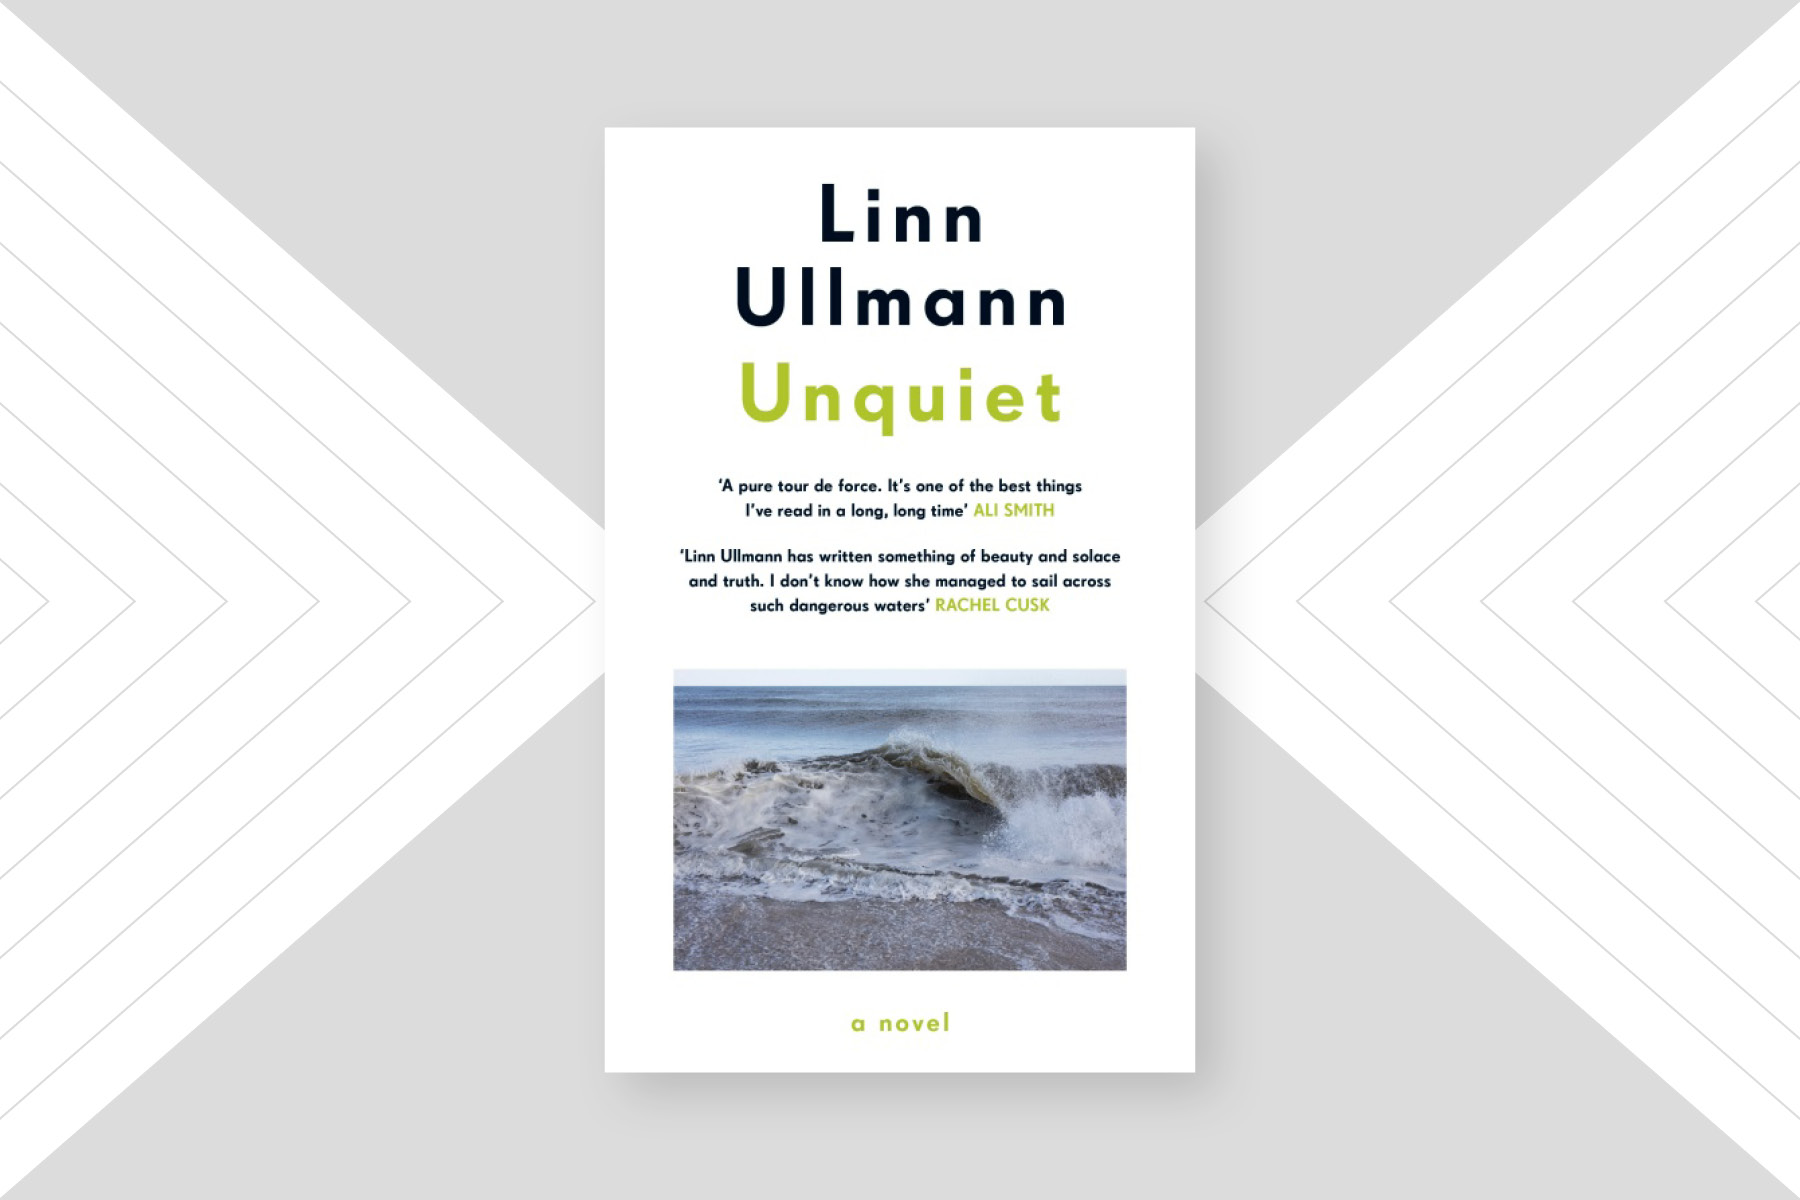 Book of the Week: Linn Ullmann's Unquiet